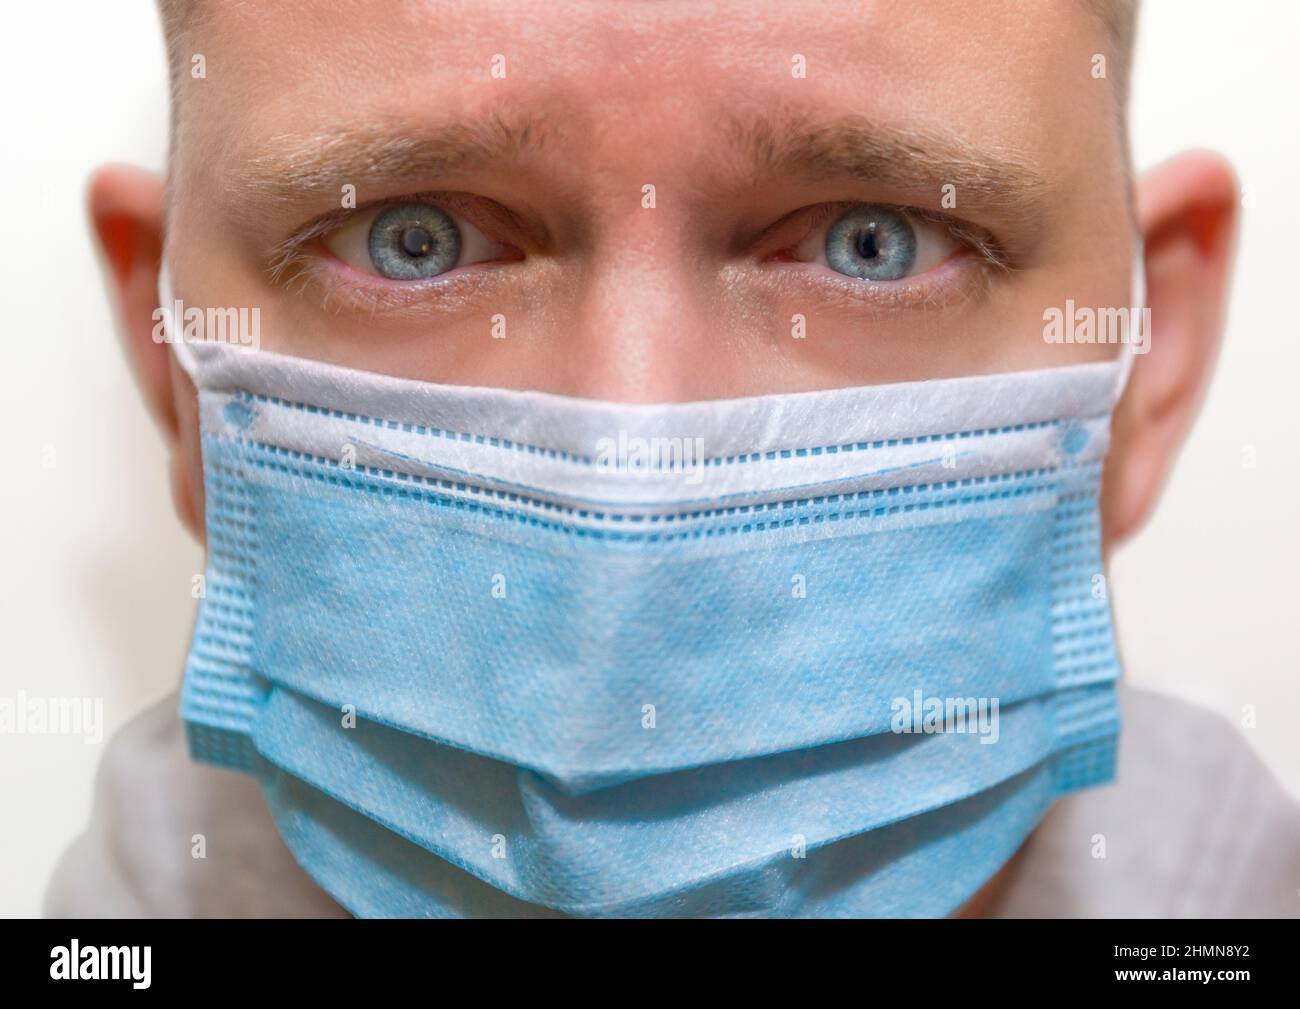 Mann mit intensiven blauen Augen, der eine Gesichtsmaske trägt und direkt auf die Kamera blickt Stockfoto